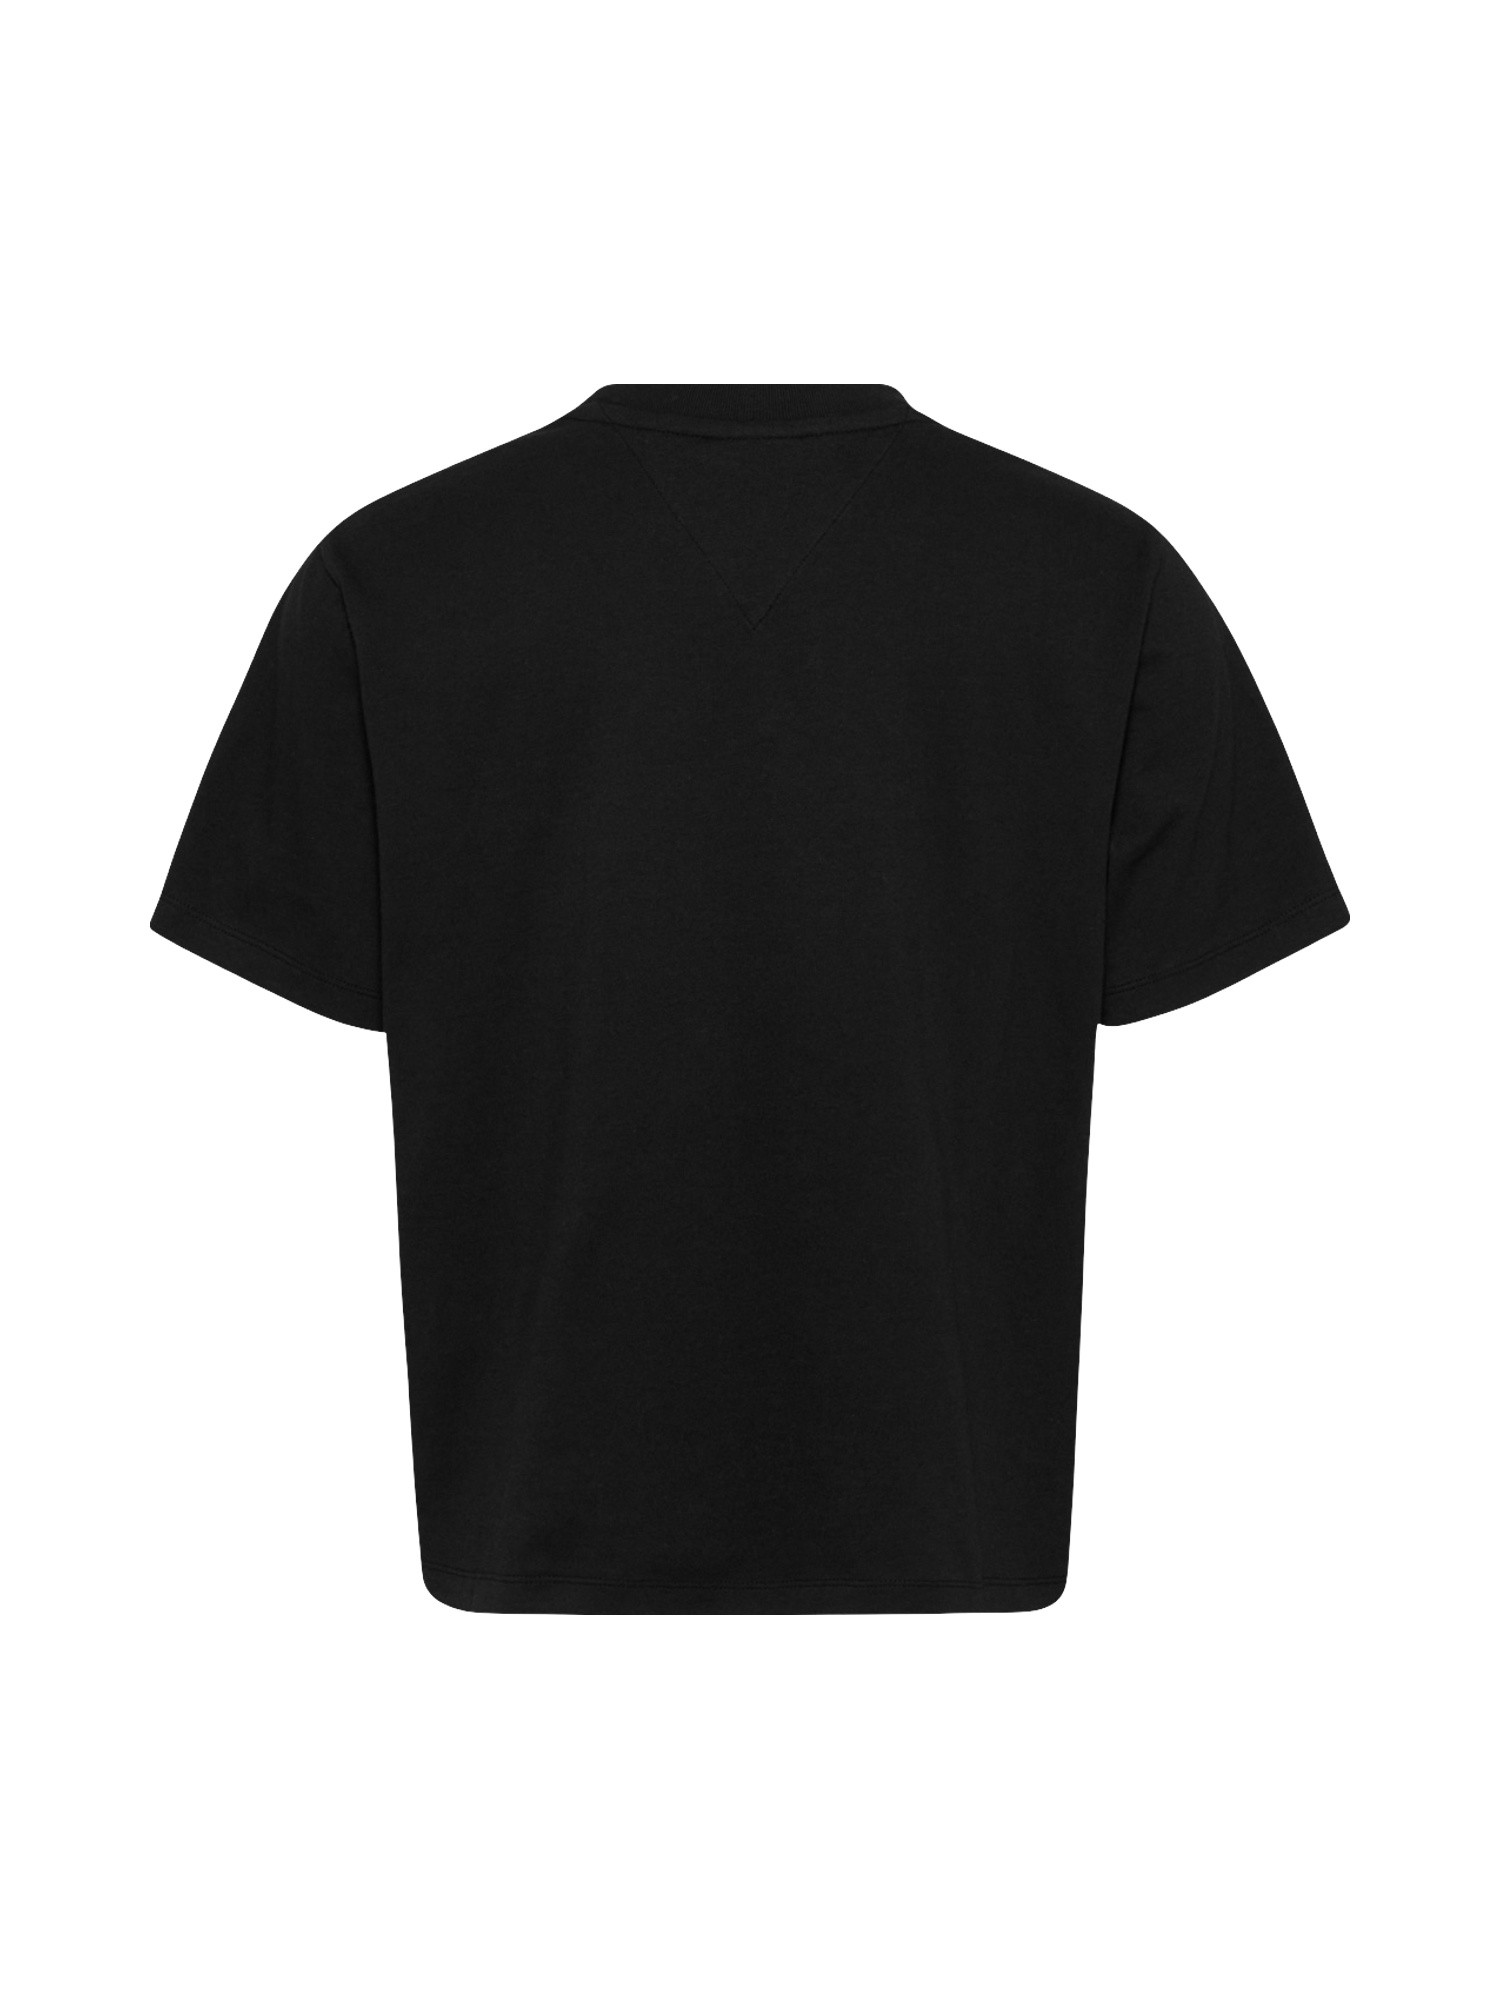 T-shirt regular fit con logo, Nero, large